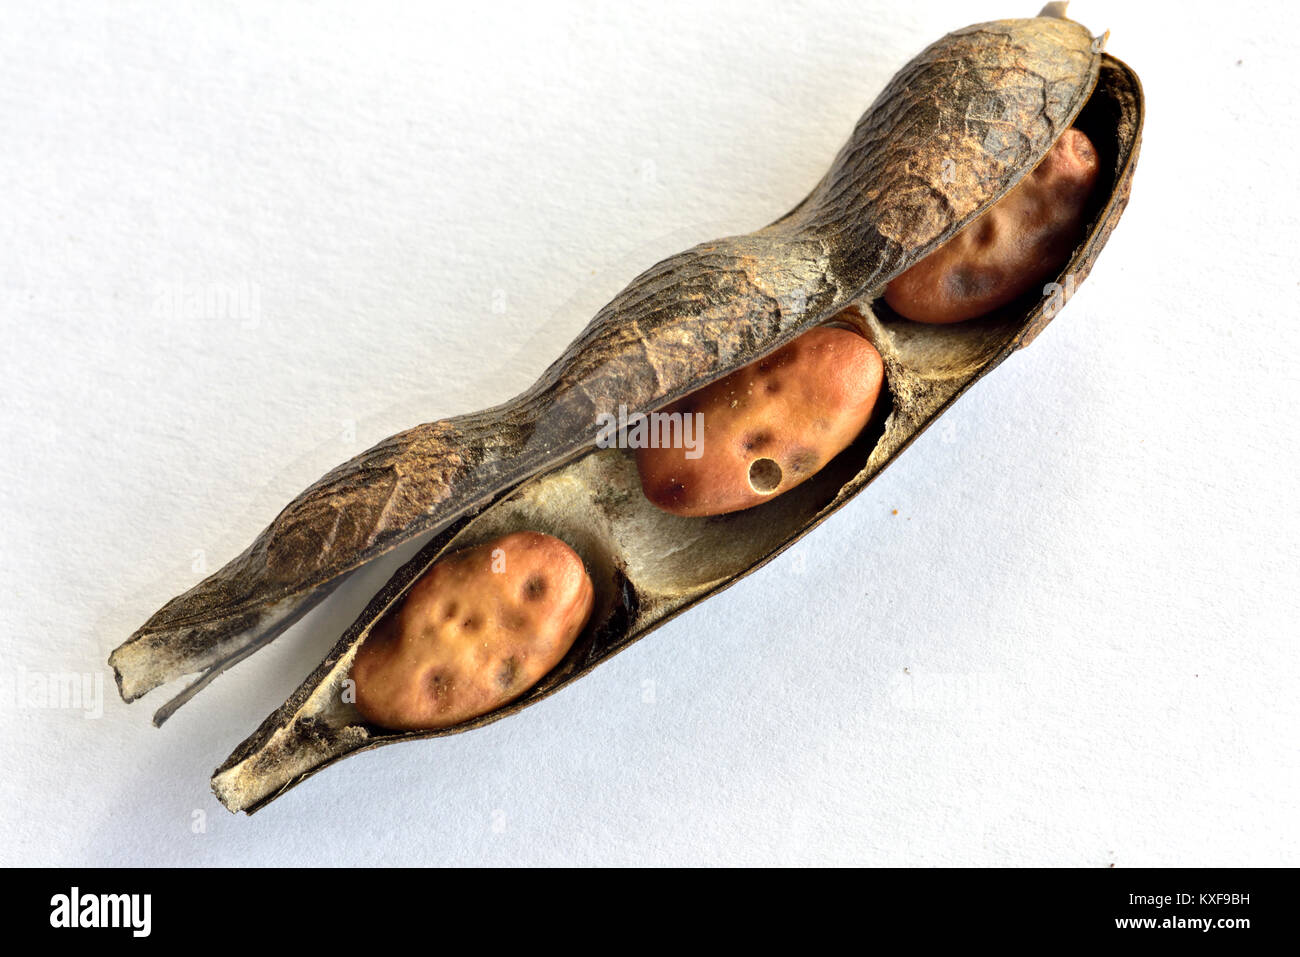 Le fave secche sbucciate o fava in pod, un importante alimento in alcuni paesi, che mostra il foro prodotto dal seme di fagiolo beetle Foto Stock